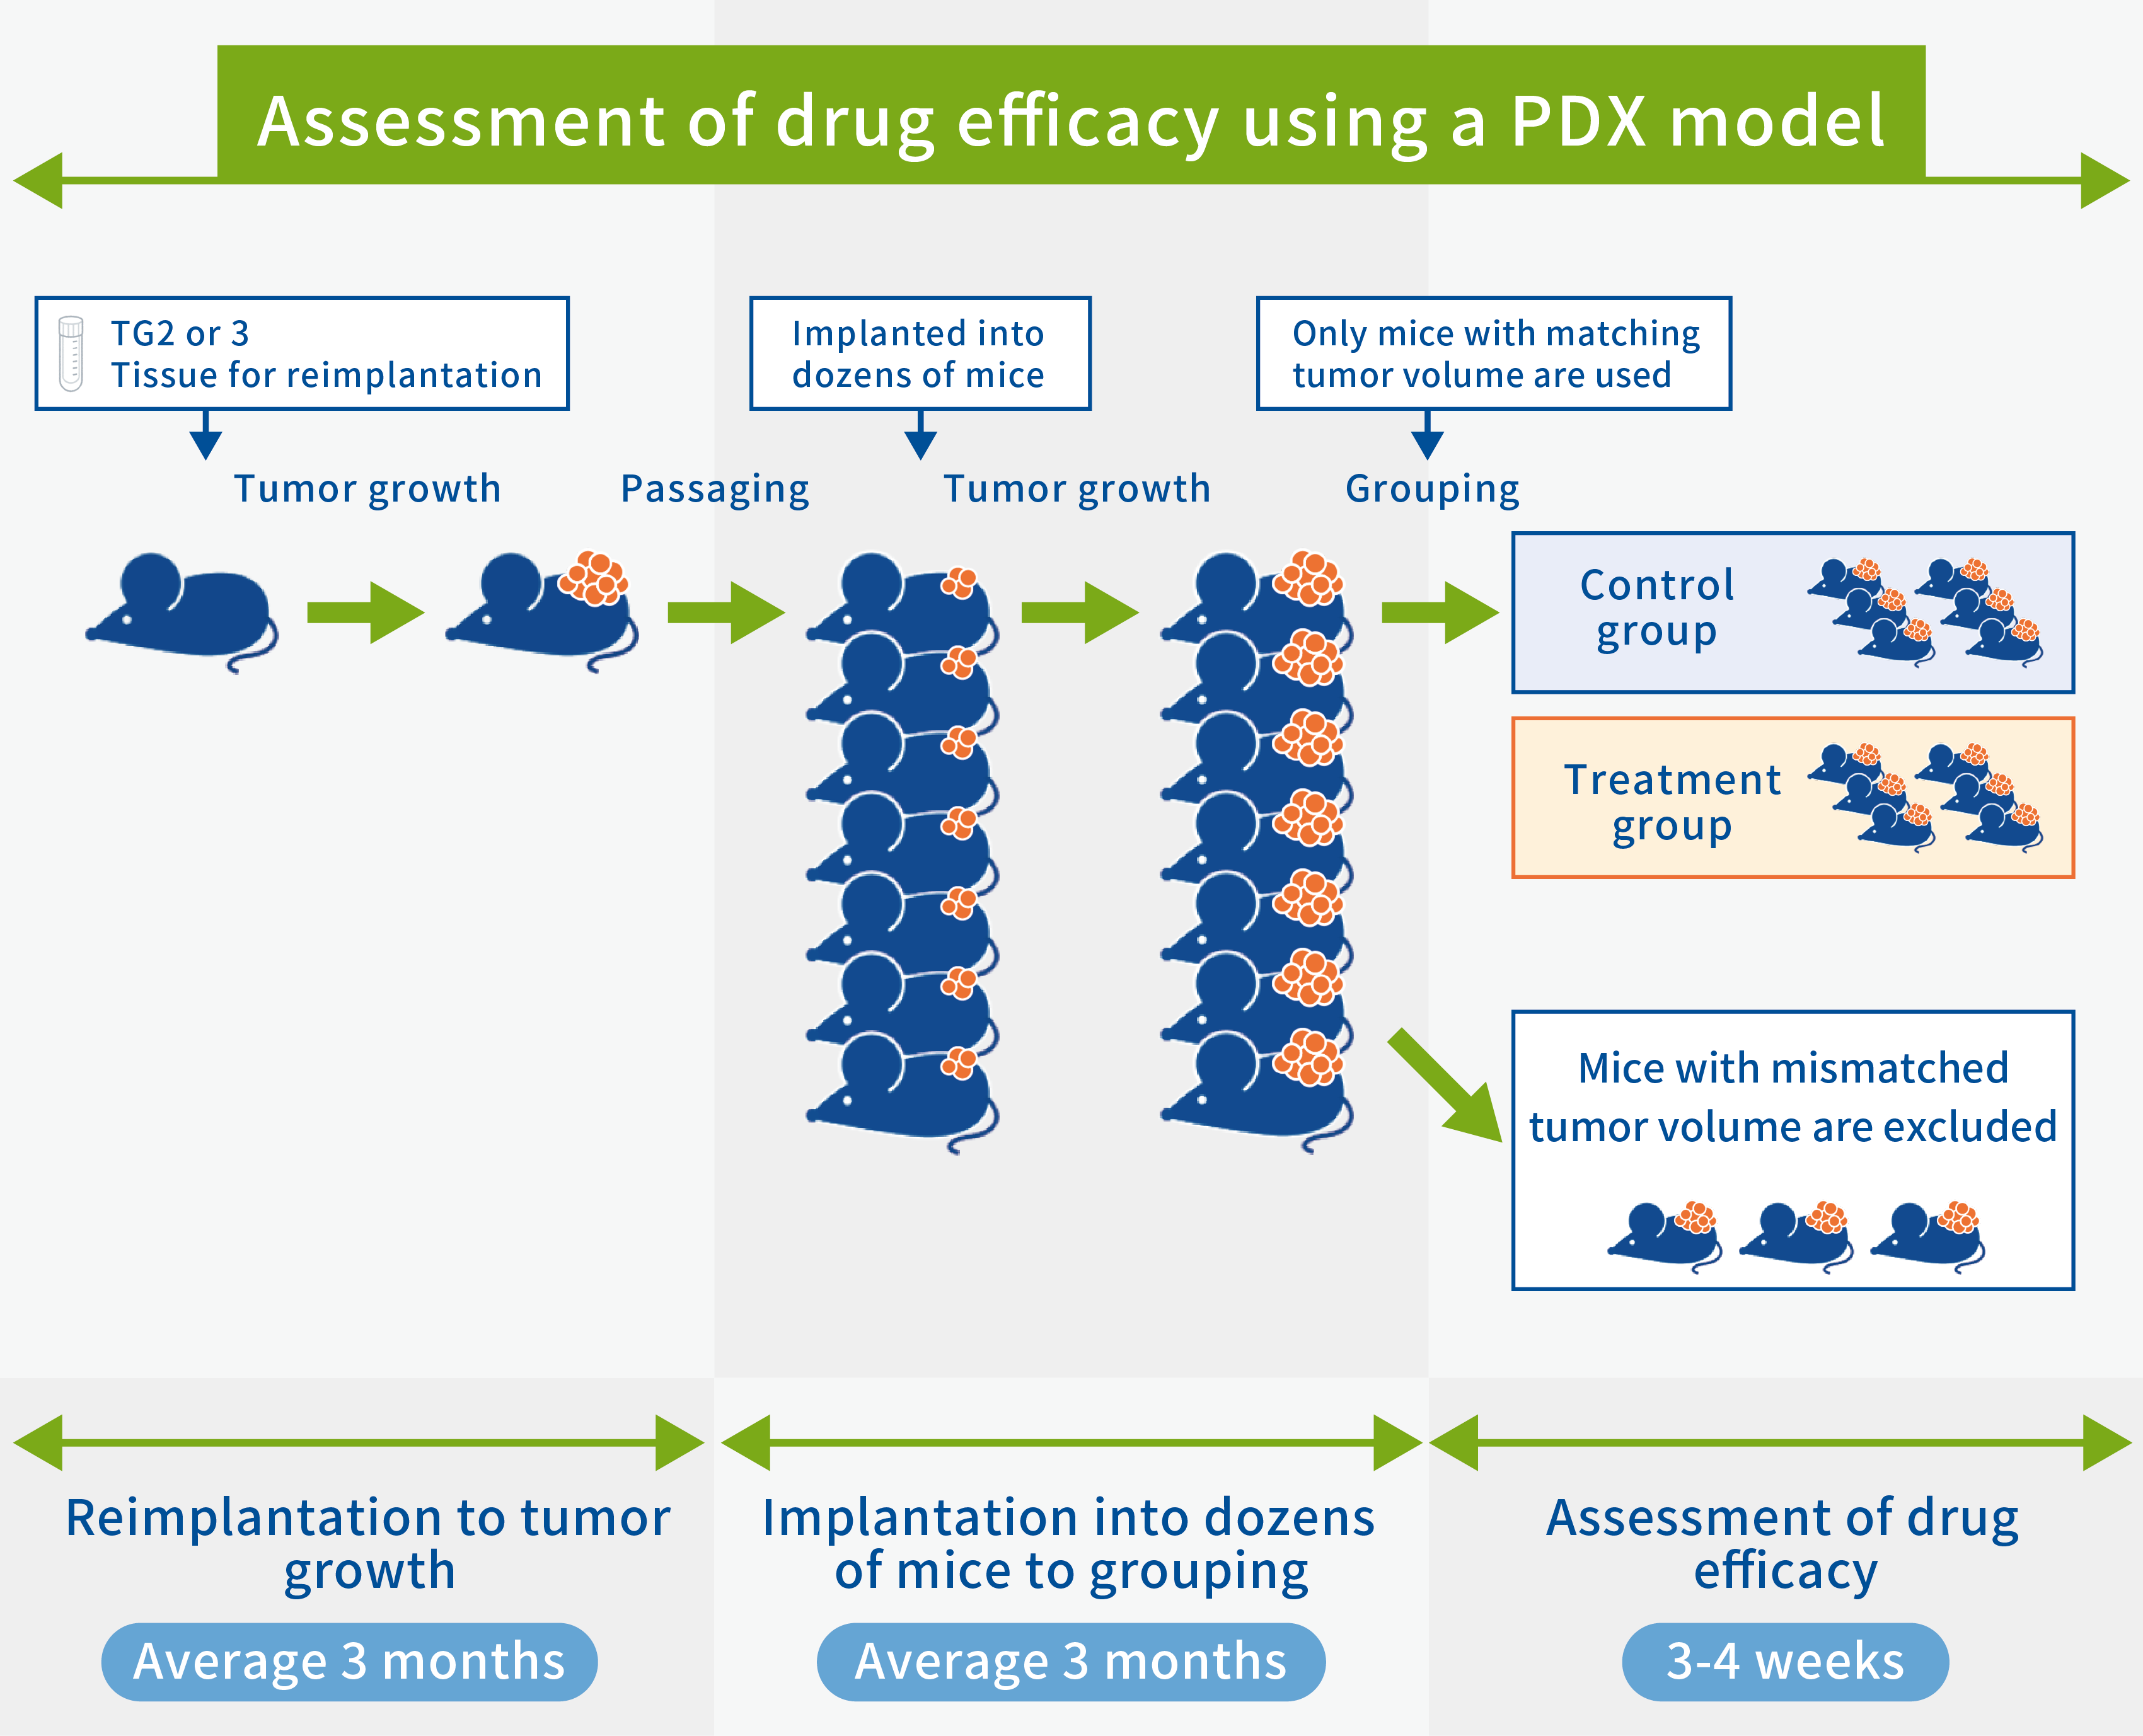 ”PDXを用いた薬効評価図”